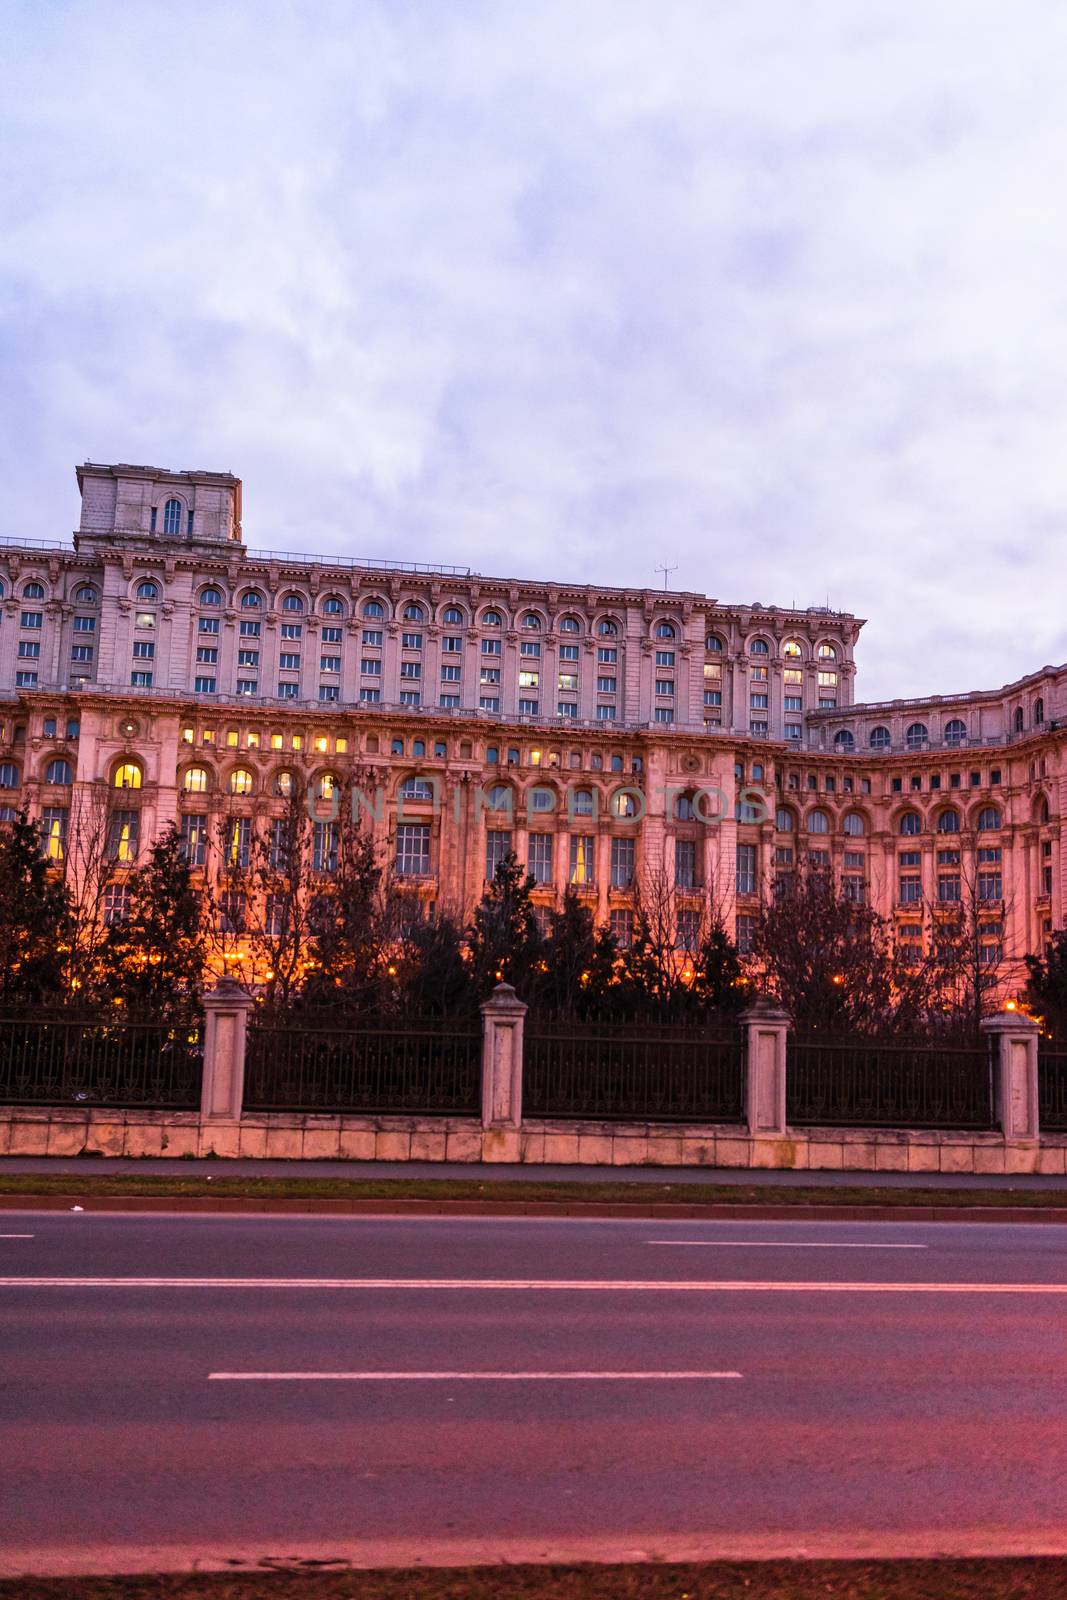 Palace of the Parliament (Palatul Parlamentului) in Bucharest, capital of Romania, 2020